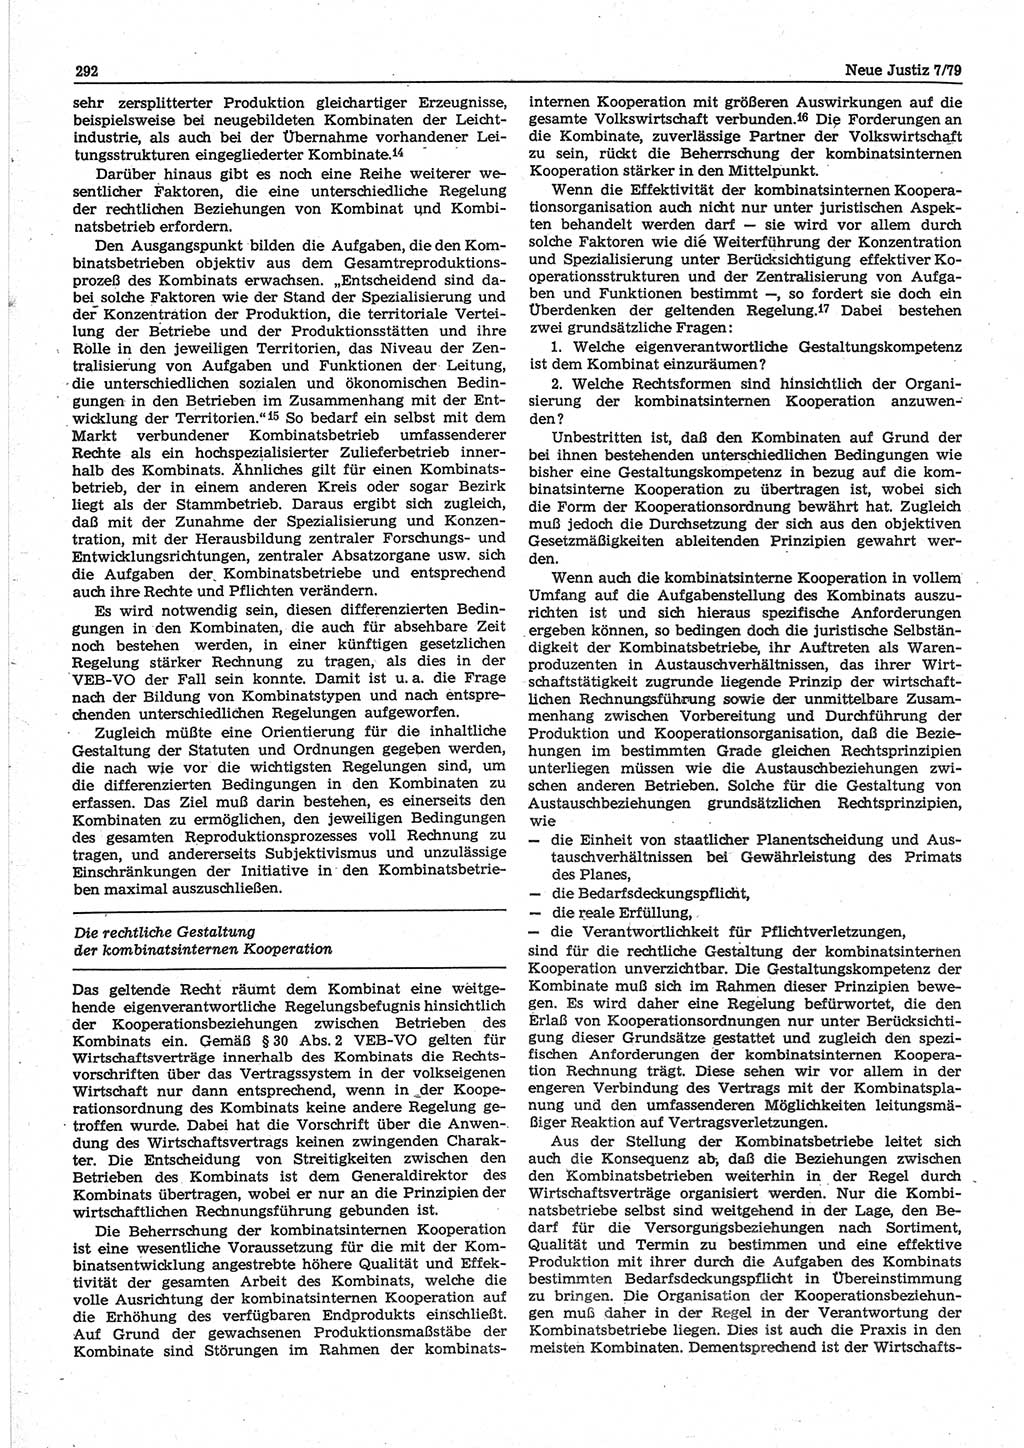 Neue Justiz (NJ), Zeitschrift für sozialistisches Recht und Gesetzlichkeit [Deutsche Demokratische Republik (DDR)], 33. Jahrgang 1979, Seite 292 (NJ DDR 1979, S. 292)